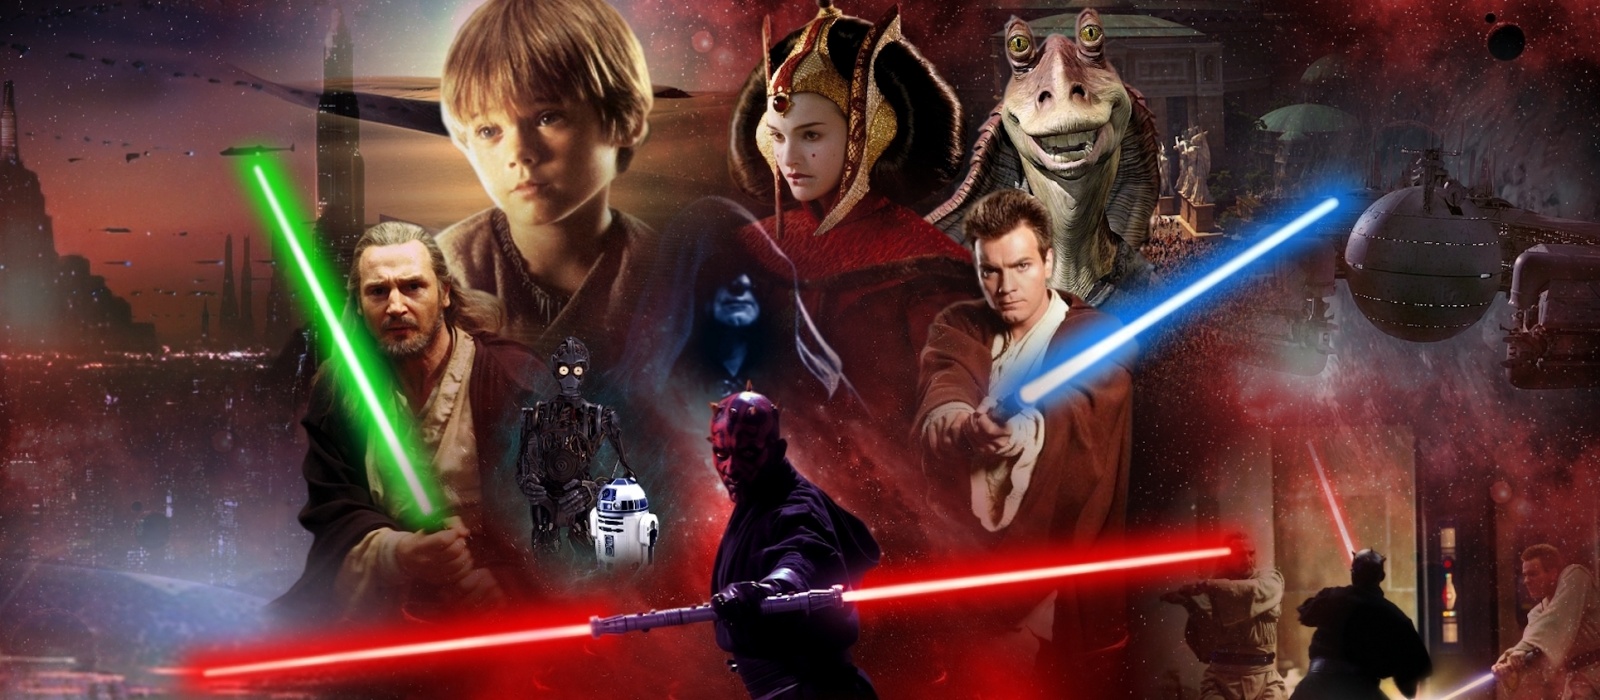 Энтузиаст воссоздал первый эпизод Star Wars на Unreal Engine и выложил в сеть демоверсию проекта